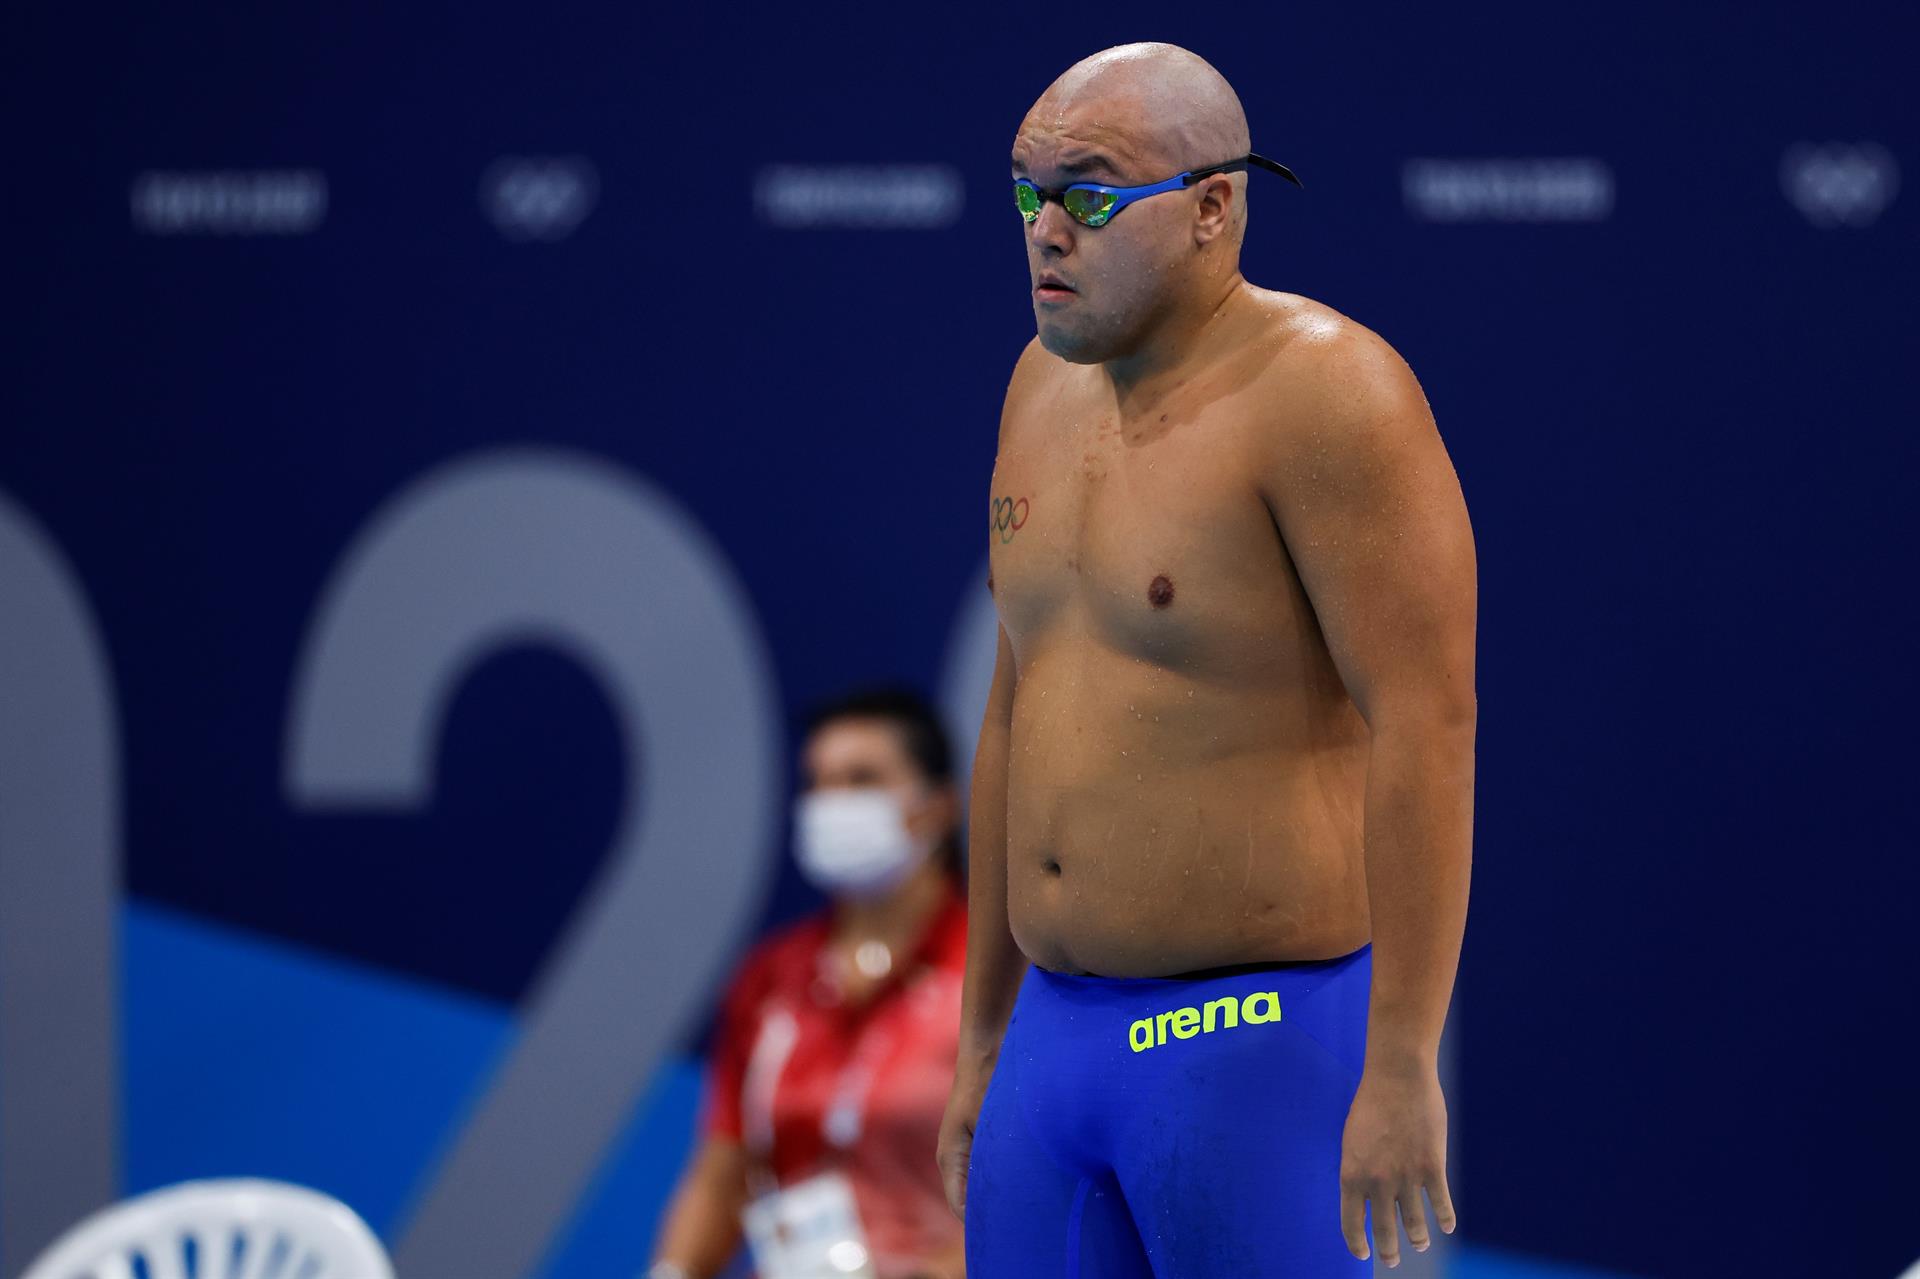 Durante la presentación de Shawn Dingilius-Wallace en los 50 metros estilo libre, unos comentaristas españoles fueron duramente criticados en redes sociales por reírse del físico del deportista de Palau.